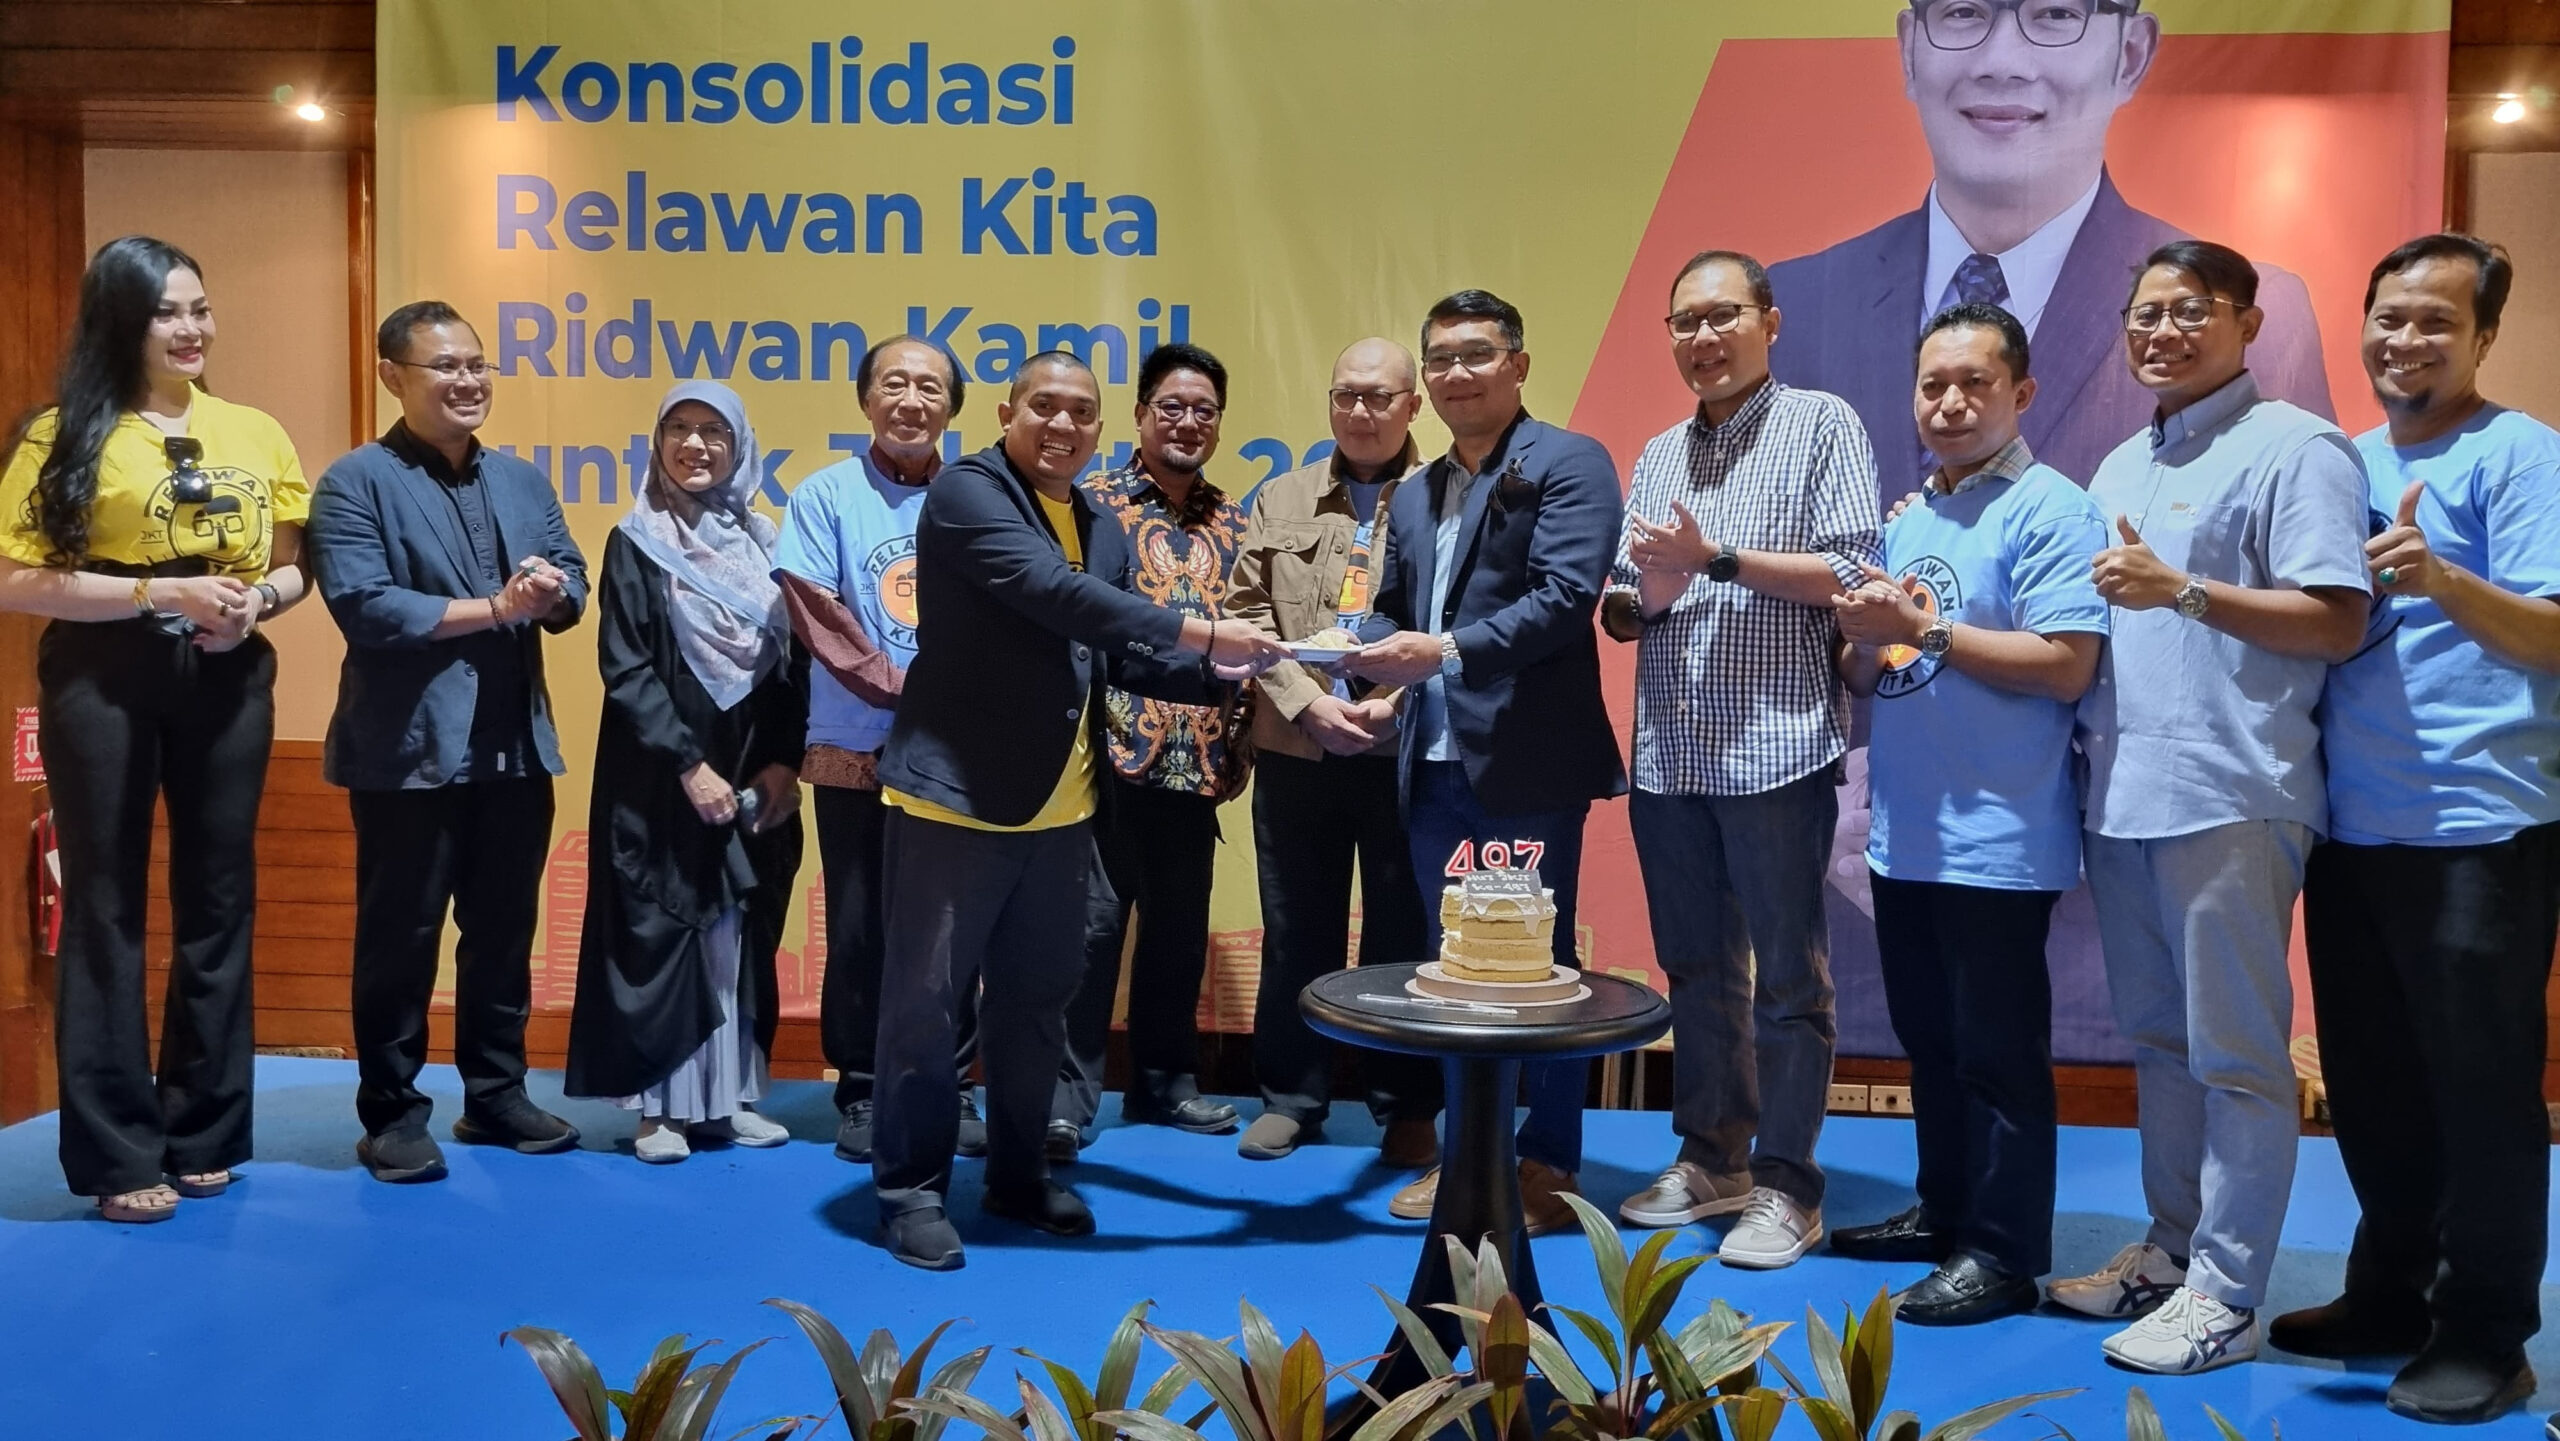 Relawan Kita Siap Memperjuangkan Ridwan Kamil di Pilkada Jakarta